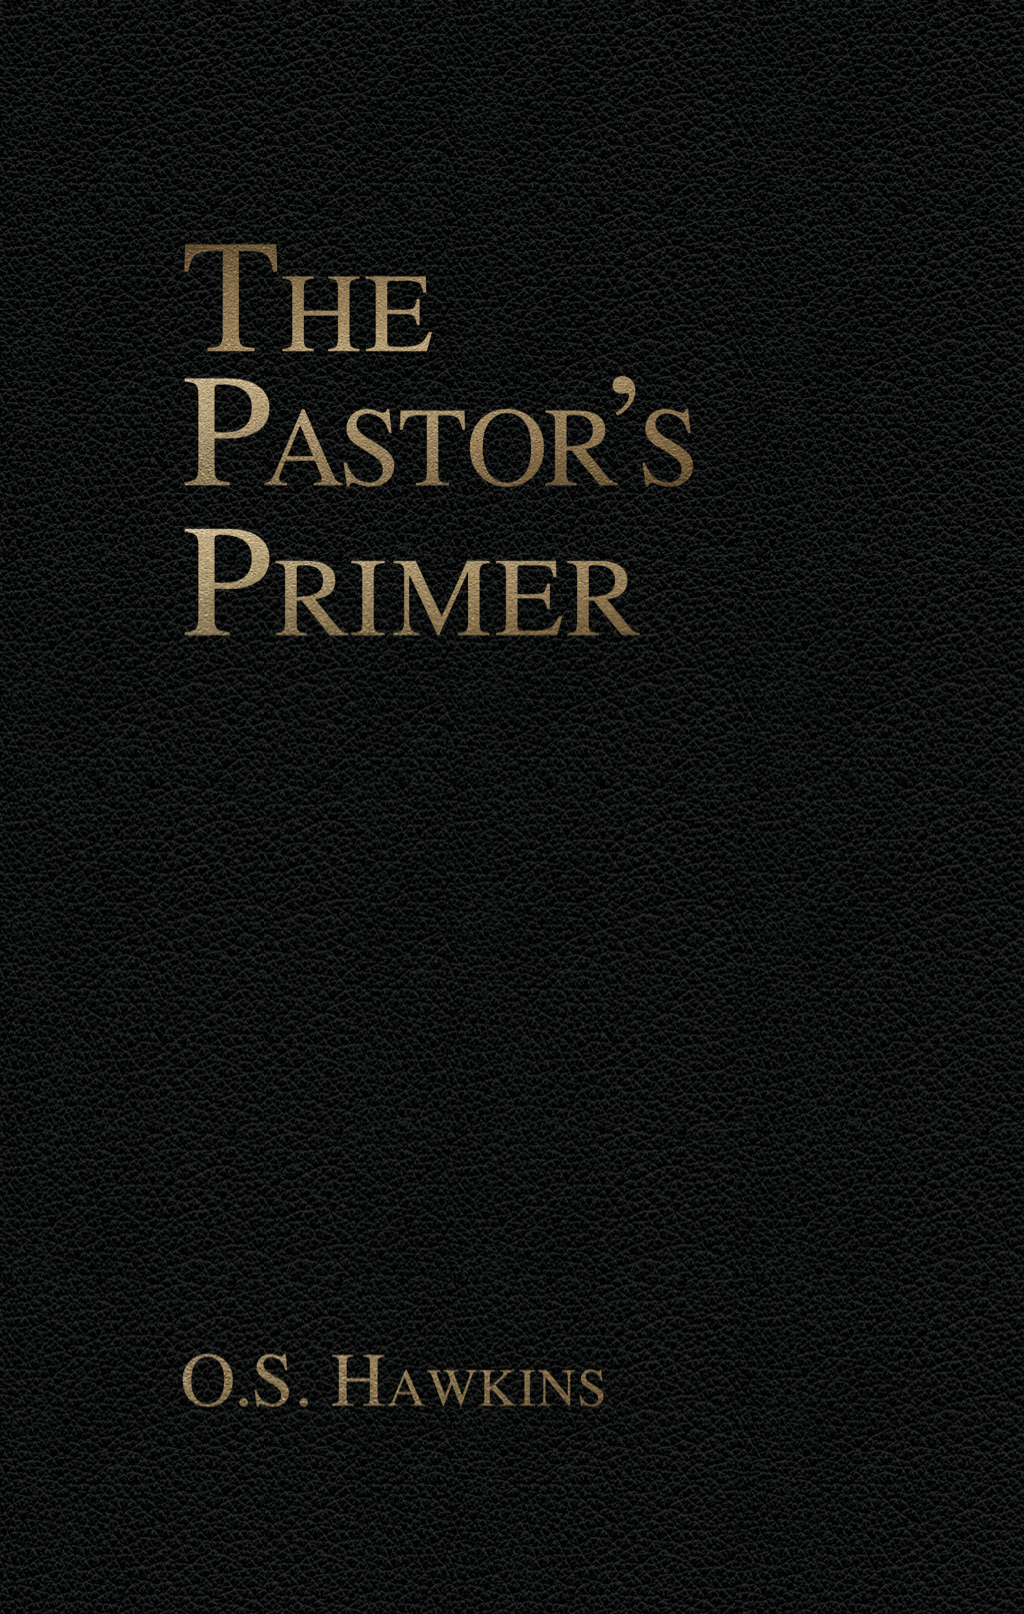 THE PASTOR’S PRIMER